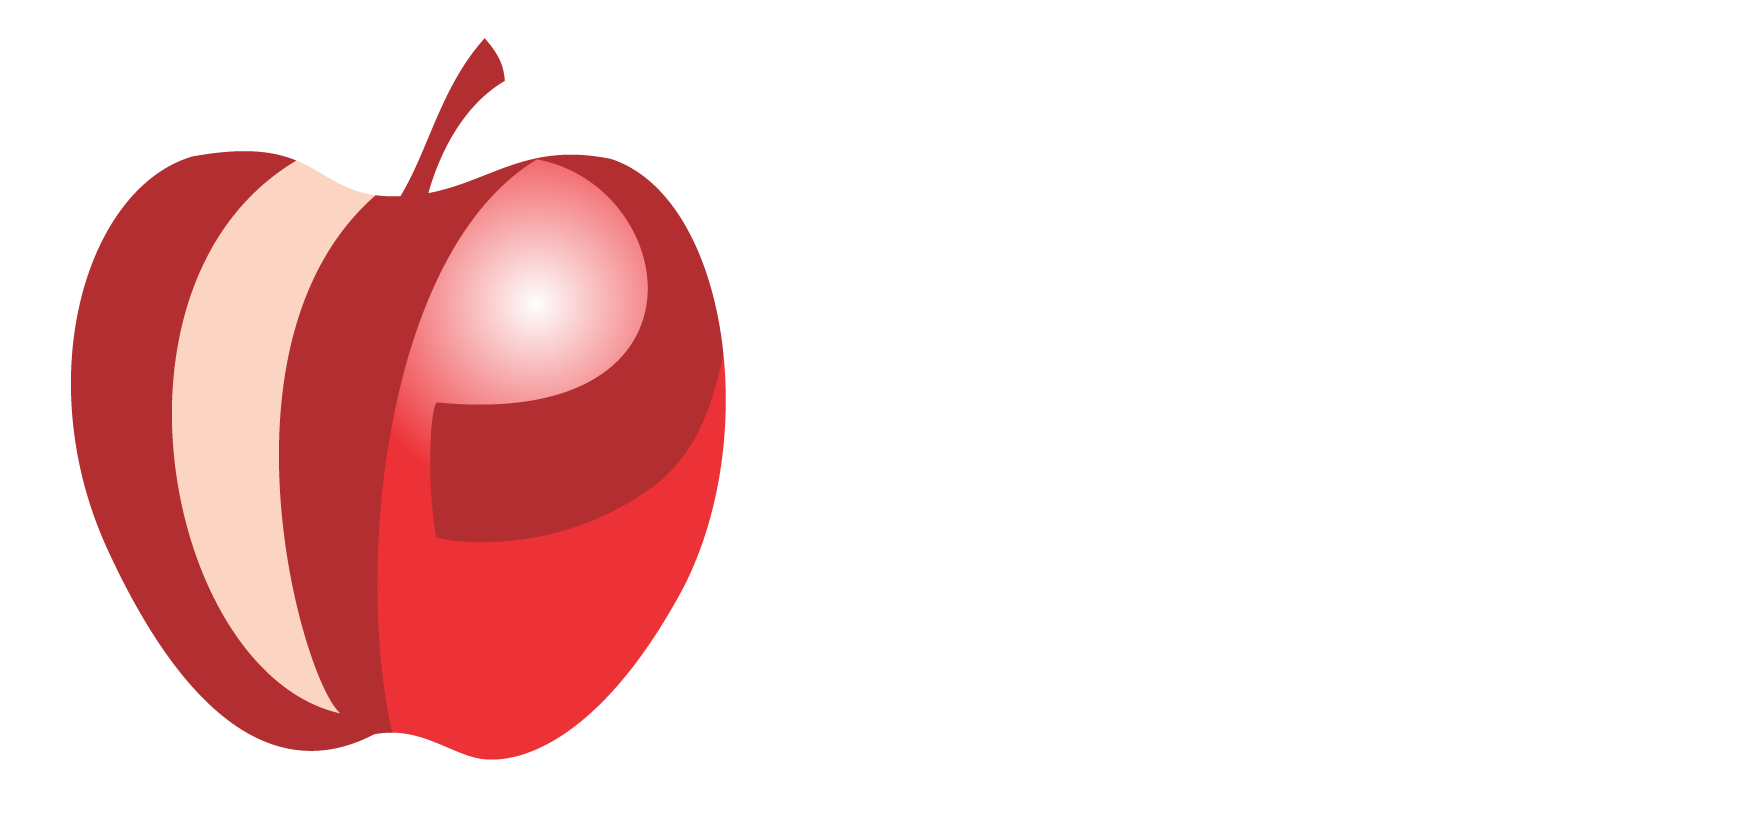 VP - Centro de Nutrição Funcional